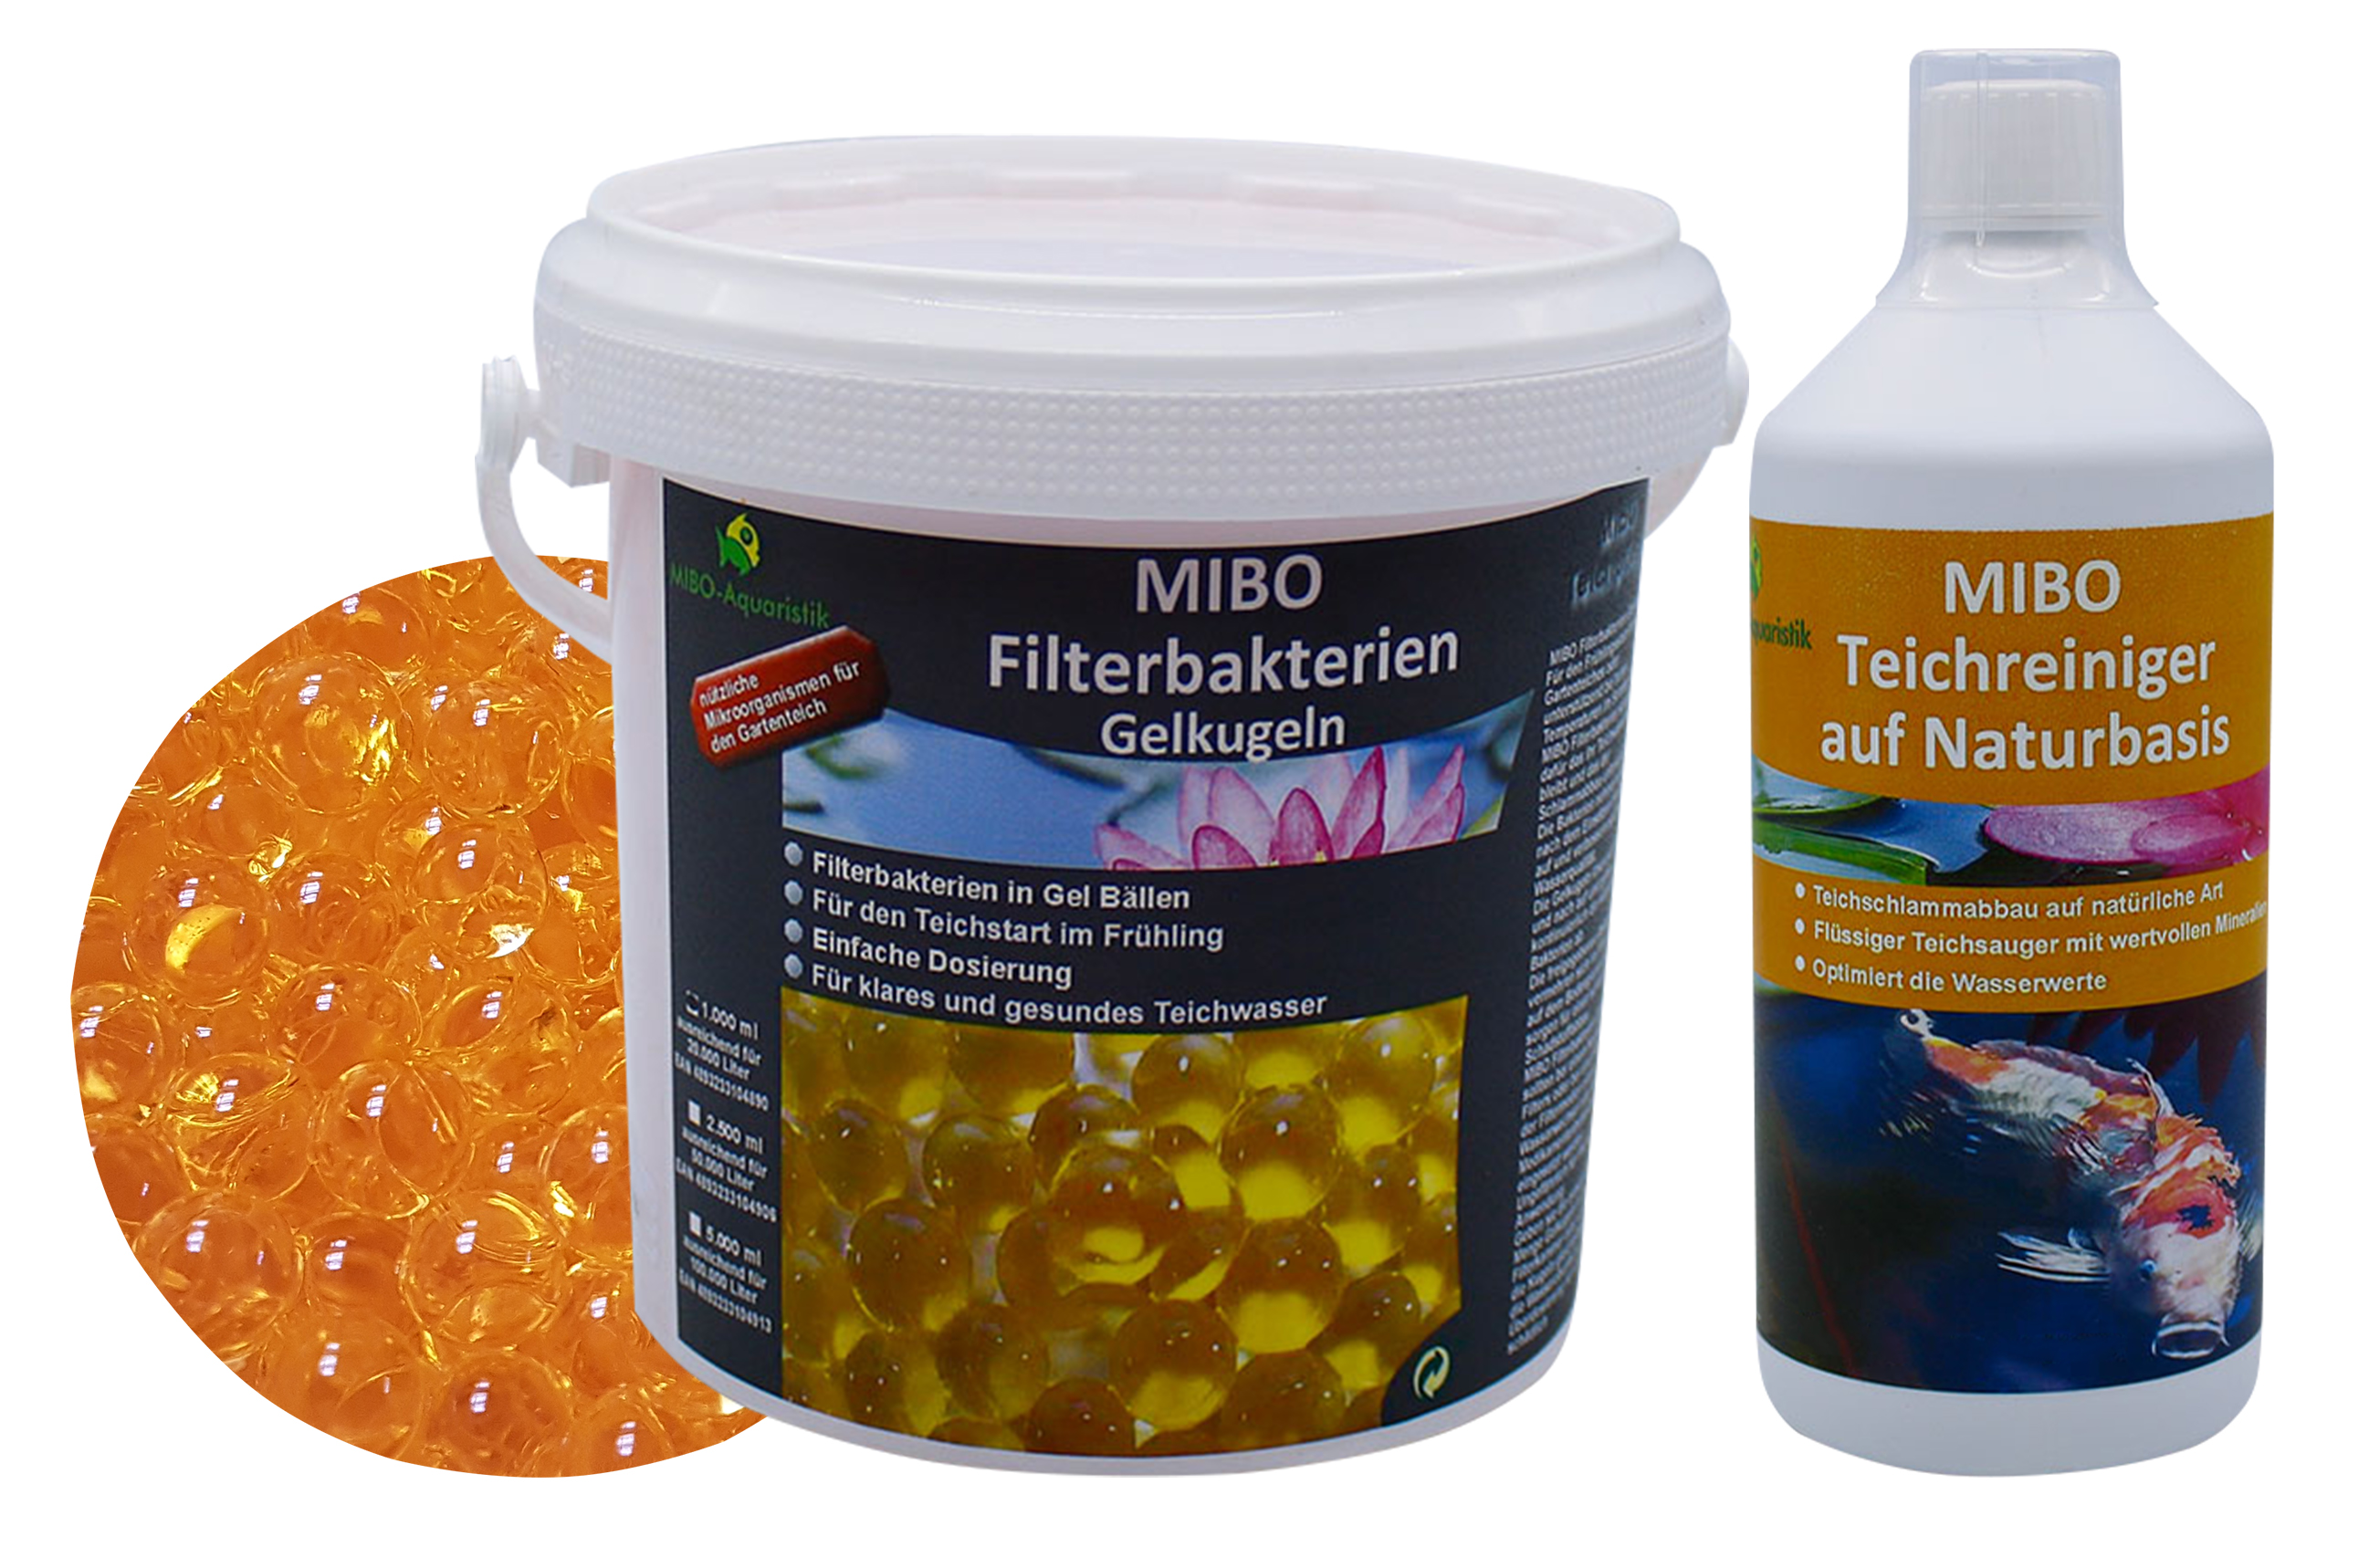 1000 ml MIBO Filterbakterien Gelkugeln & 1000 ml MIBO Teichreiniger auf Naturbasis beides ausreichend für 20.000 Liter